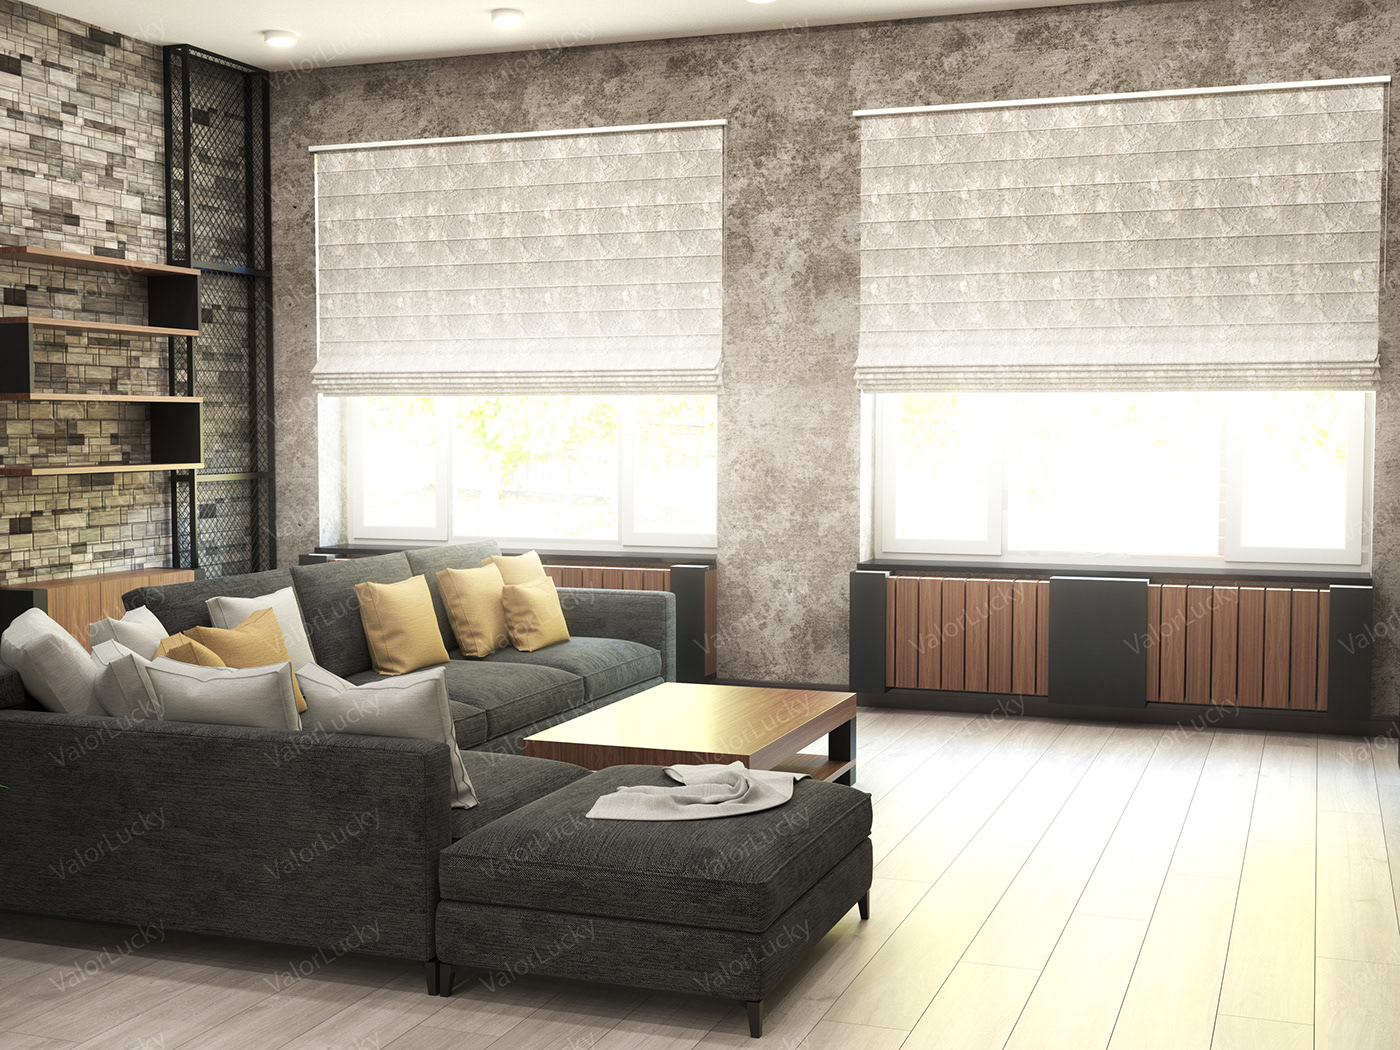 design Interior light shelves sofa диван дизайн интерьер полки свет